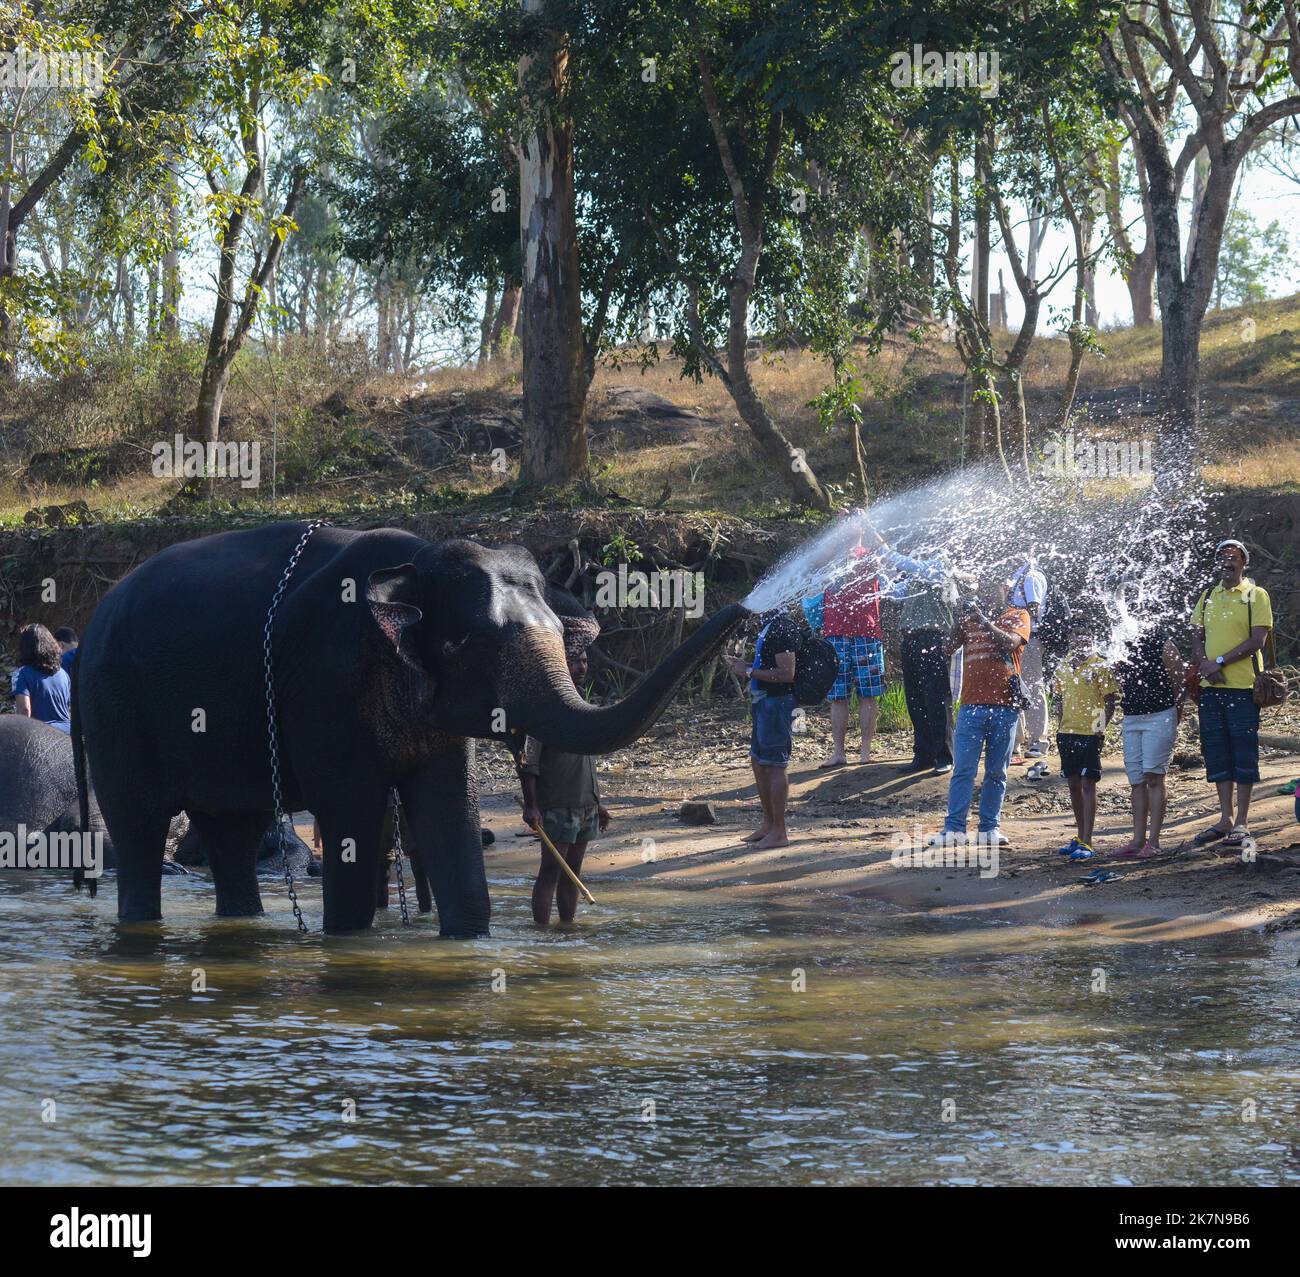 Coorg, Indien - 8. Januar 2014 - ein indischer Elefant spritzt Wasser auf Touristen im Fluss Kaveri in Coorg in Indien Stockfoto